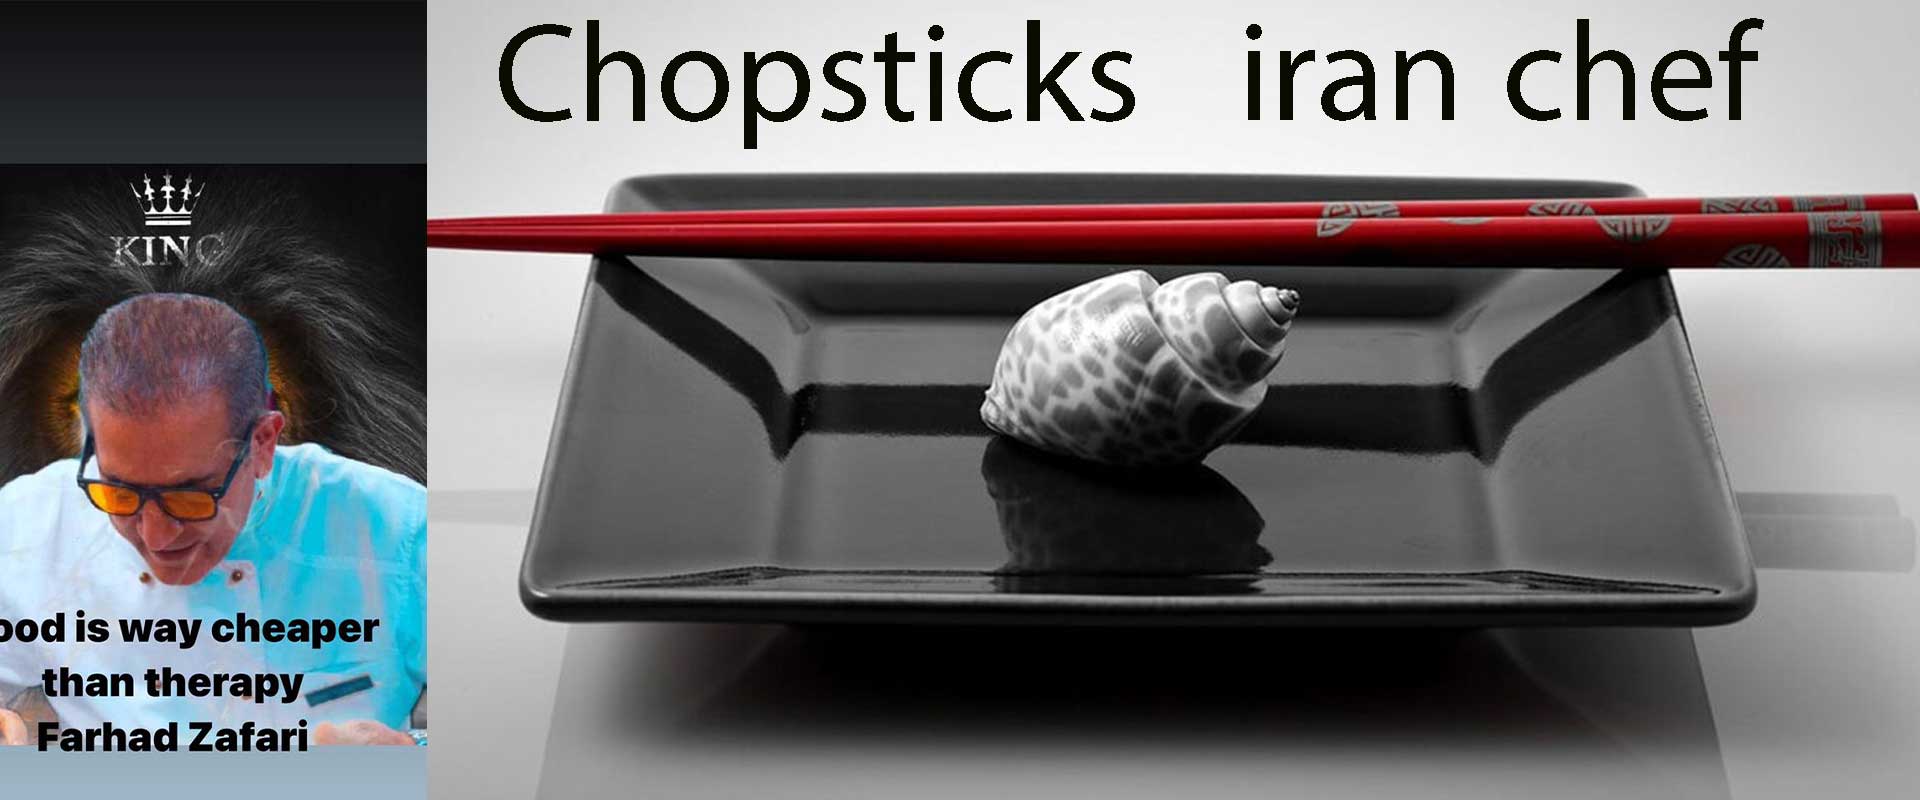 تاریخچه، آداب و آموزش استفاده Chopsticks چاپستیک با ایران شف